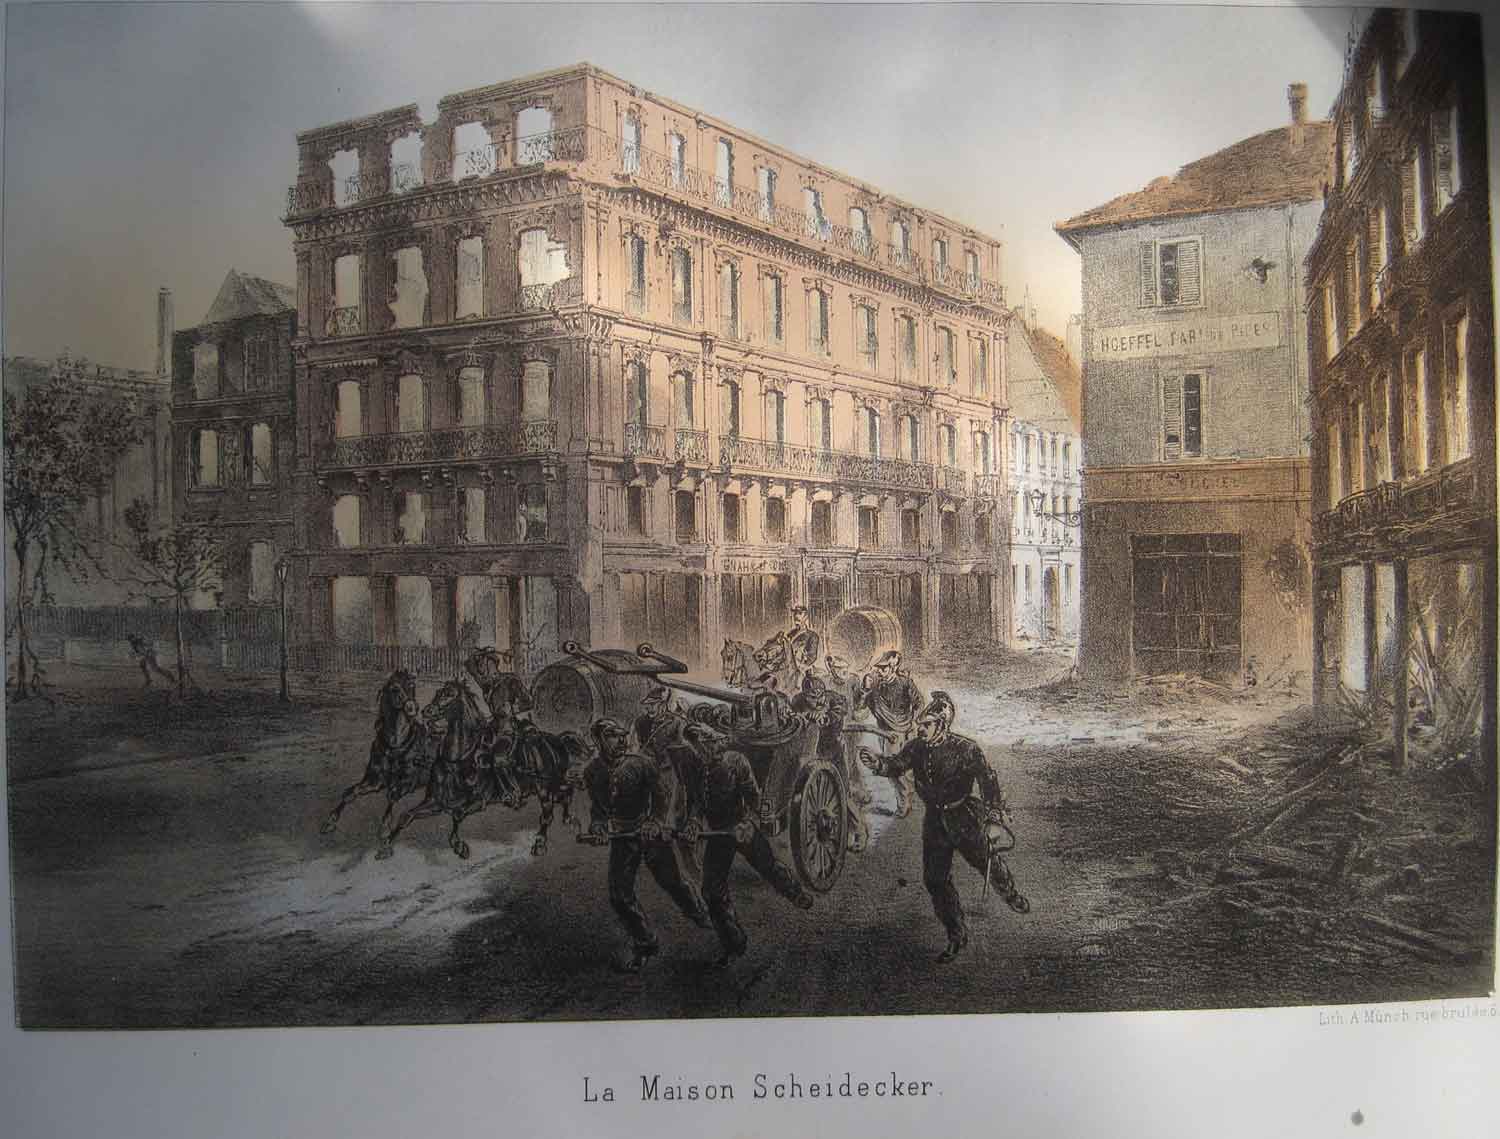 The Scheidecker house destroyed in 1870